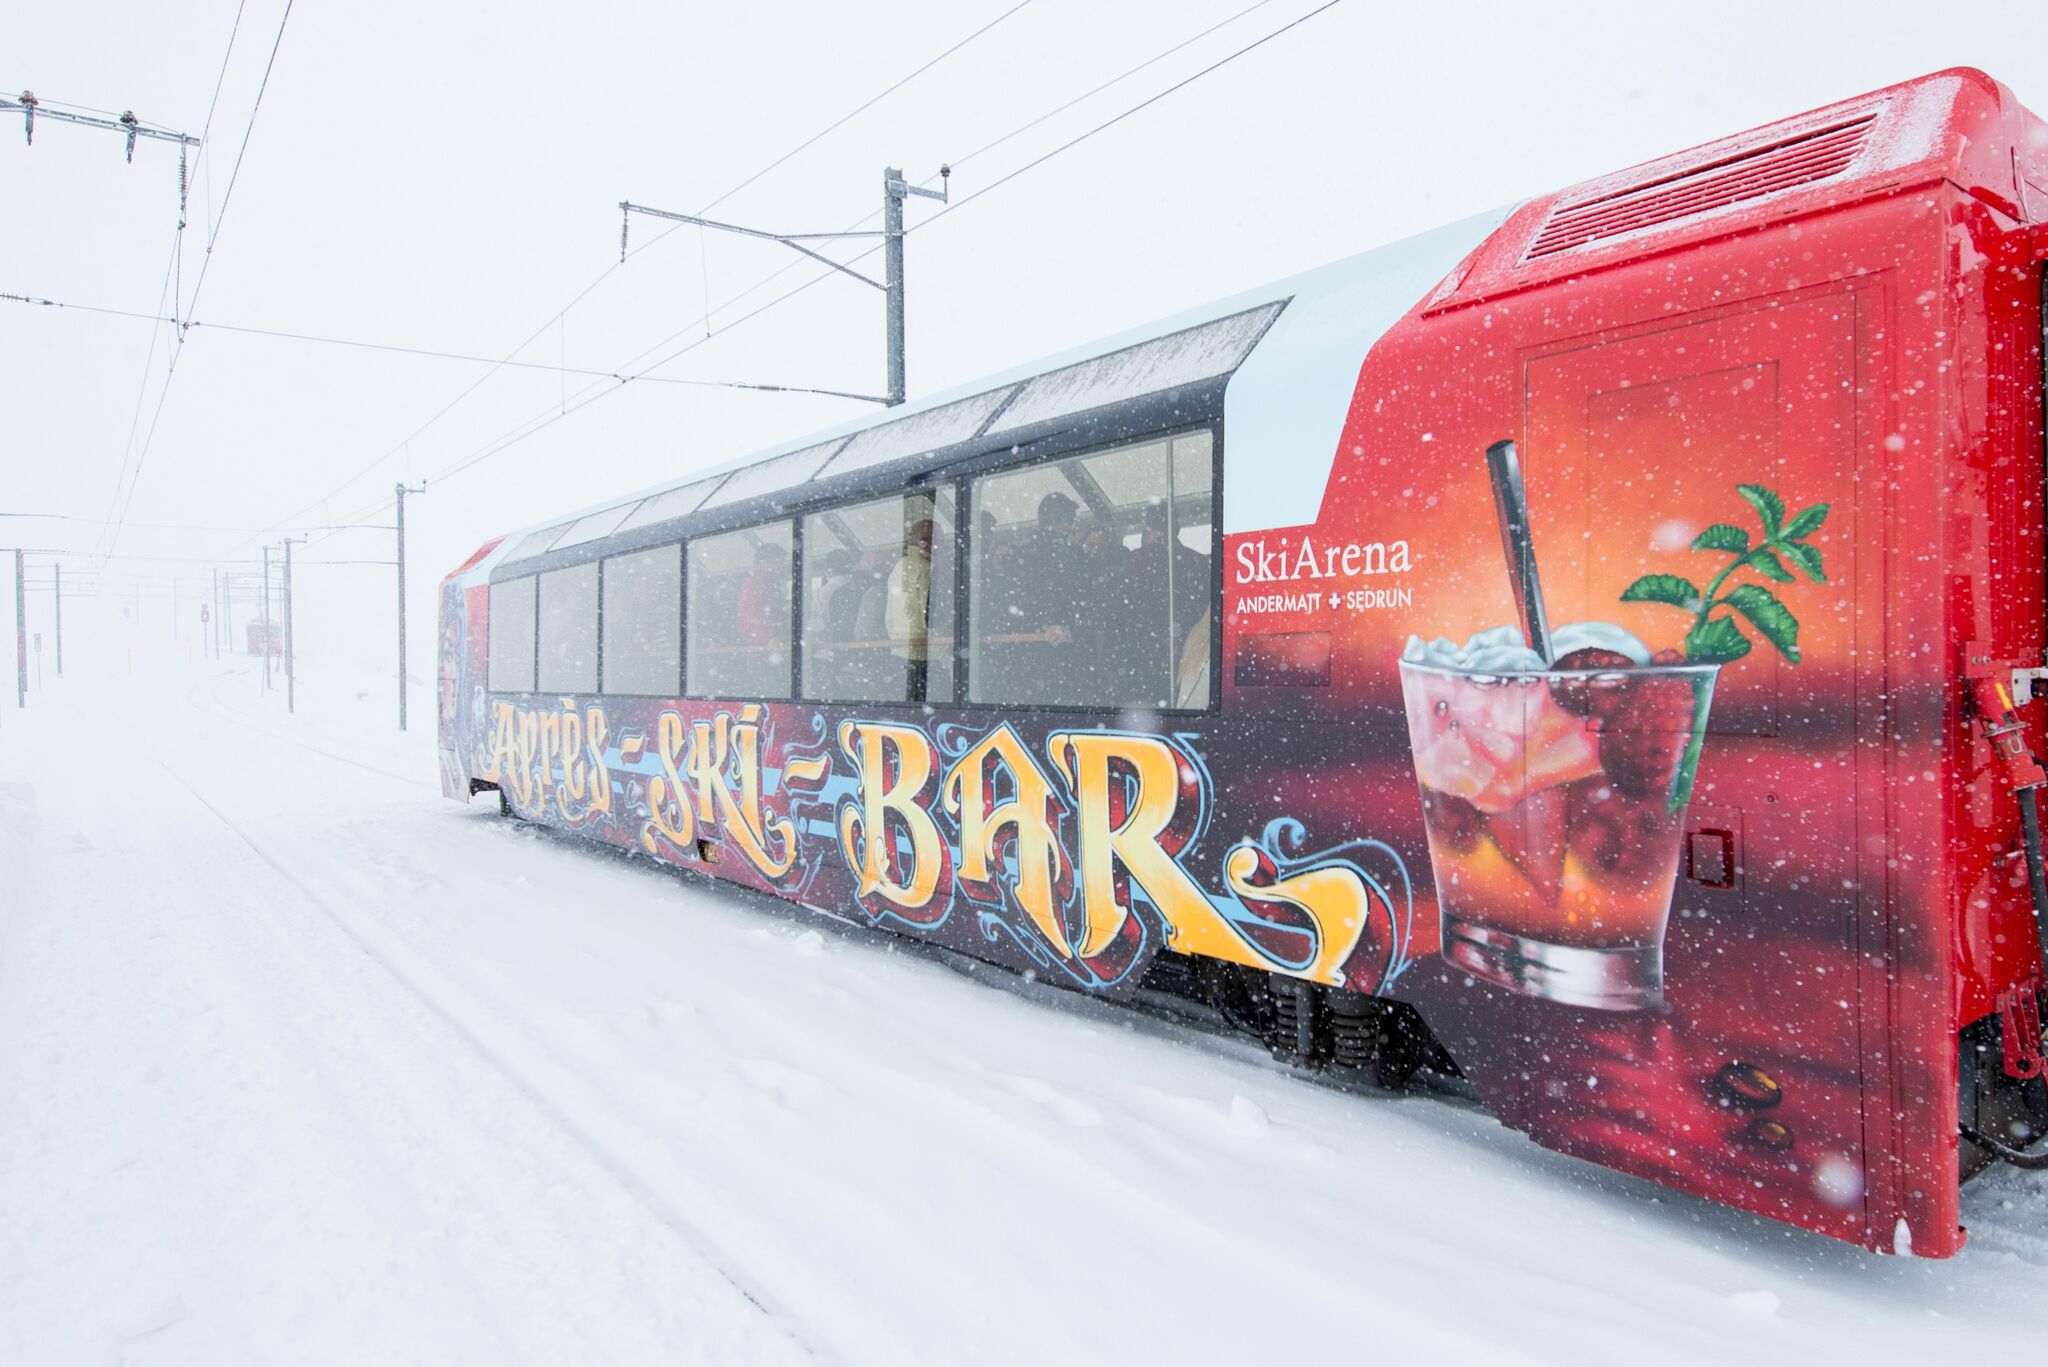 Passend zum Skifahren und dem heurigen Winter: Après-Ski-Bar-Wagen